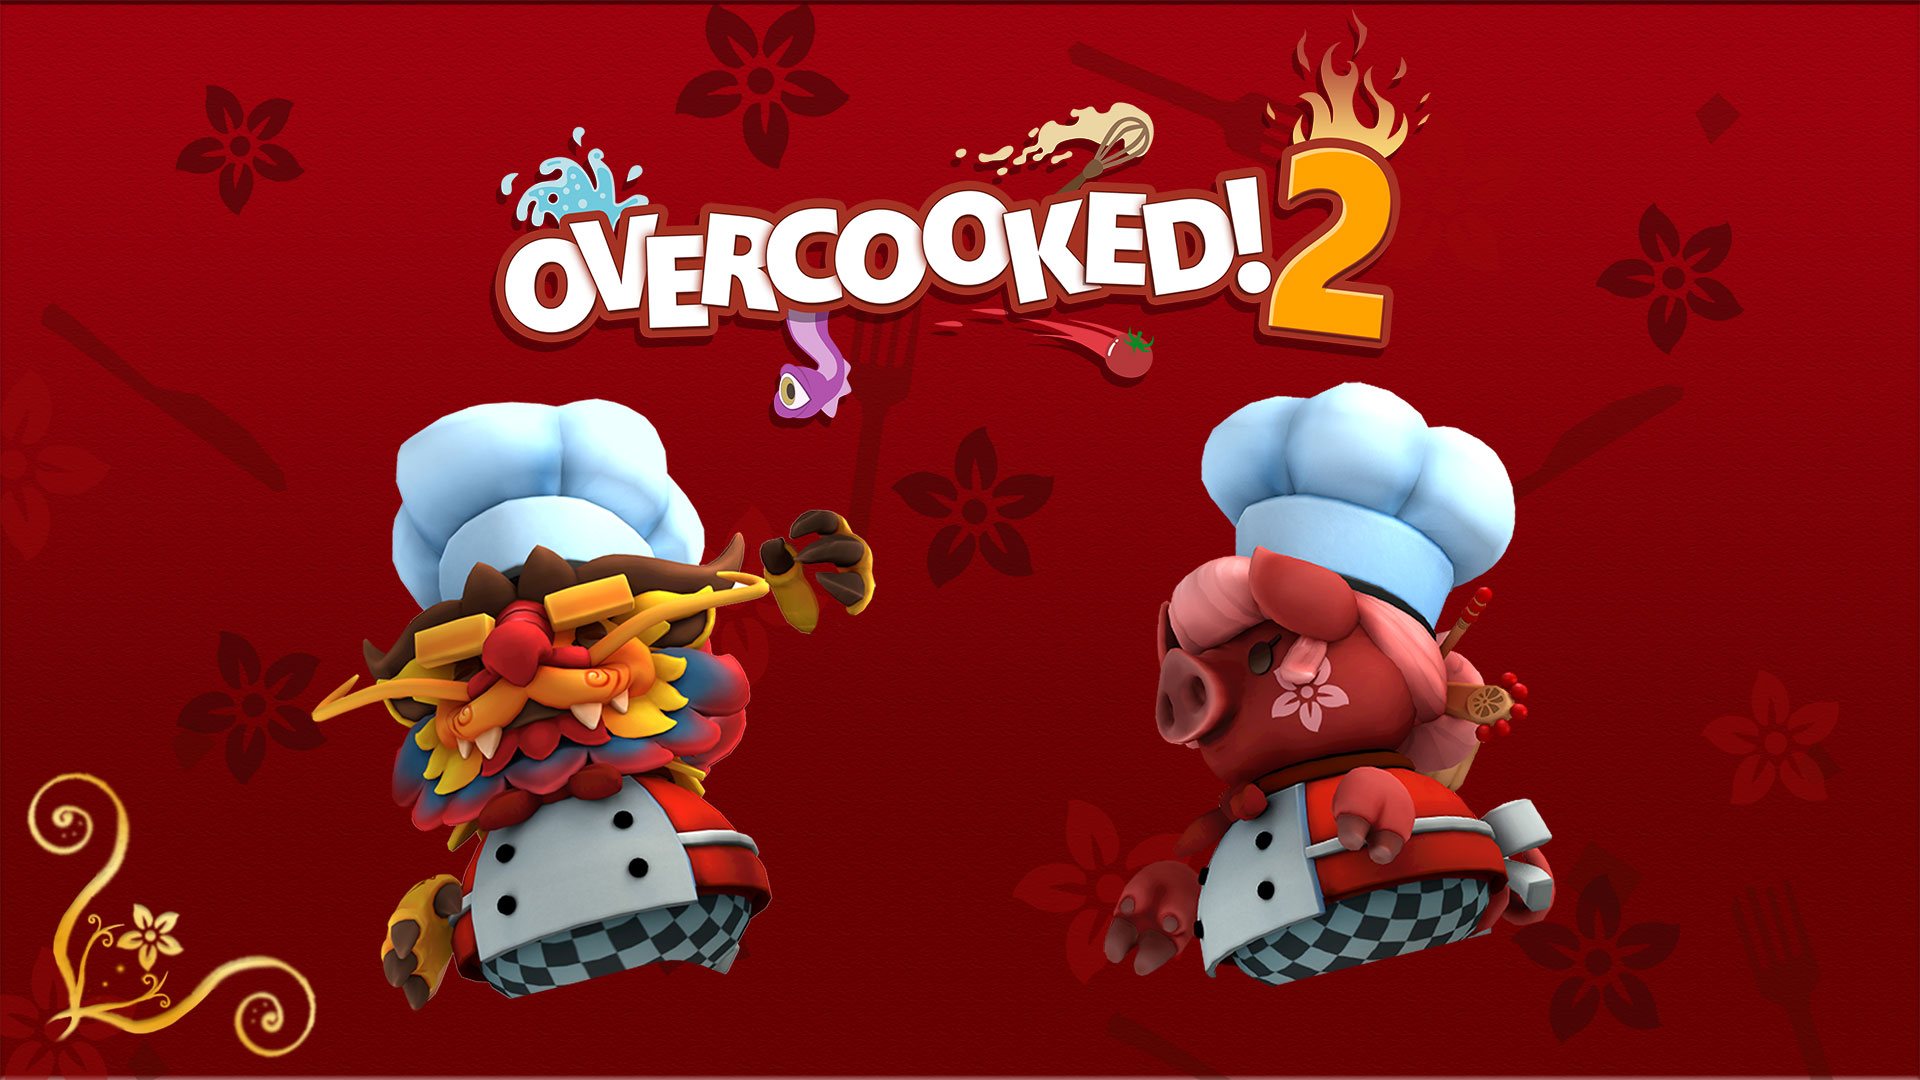 Besplatna kineska novogodišnja nadoplata za Overcooked 2 dodaje nove kuhare, recepte i način preživljavanja